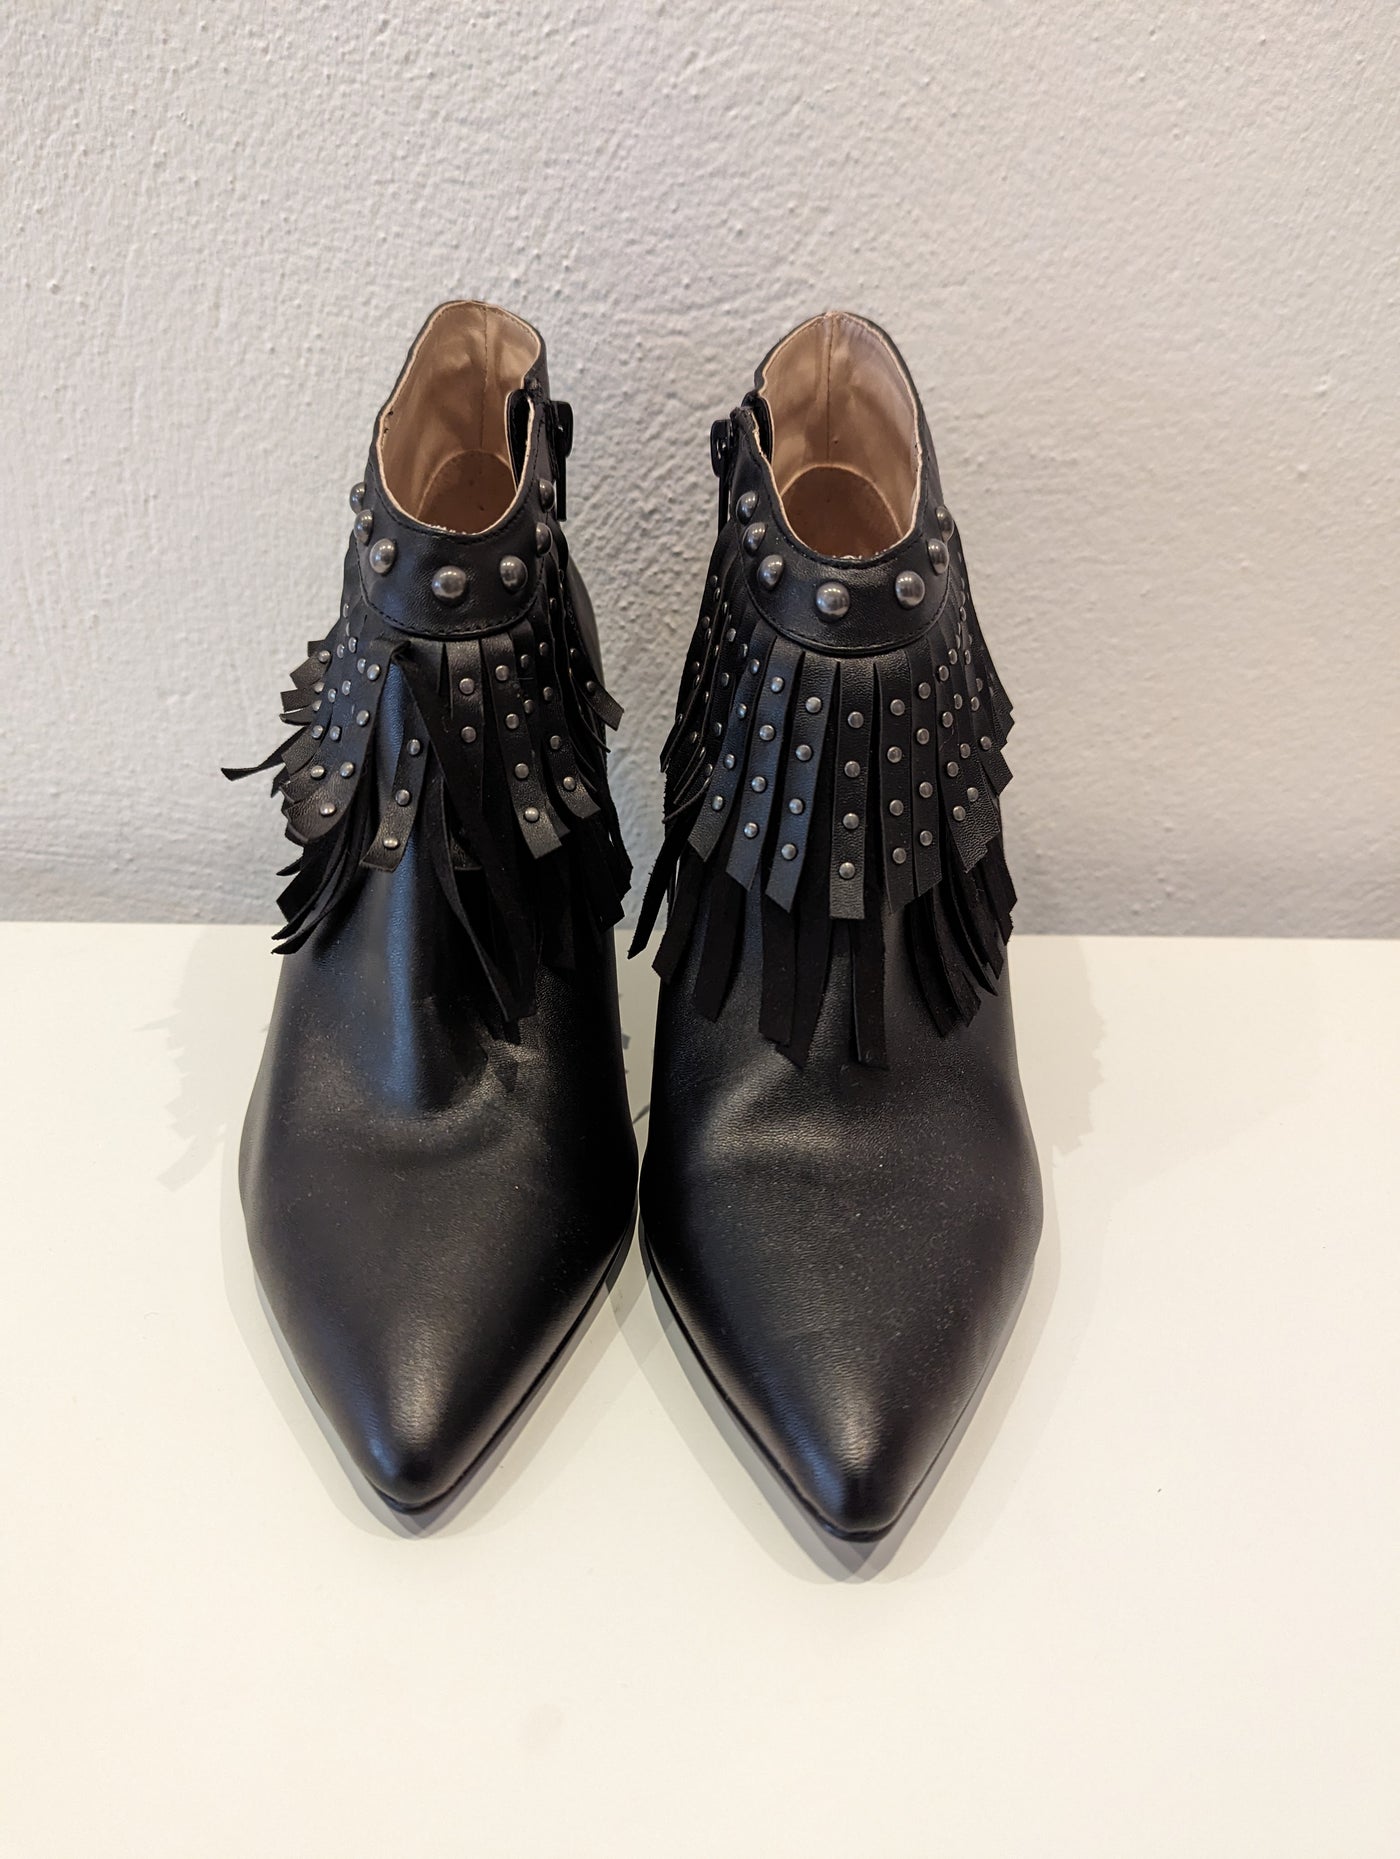 Kaleidoscope Black Fringed Ankle Boots Size 6 New